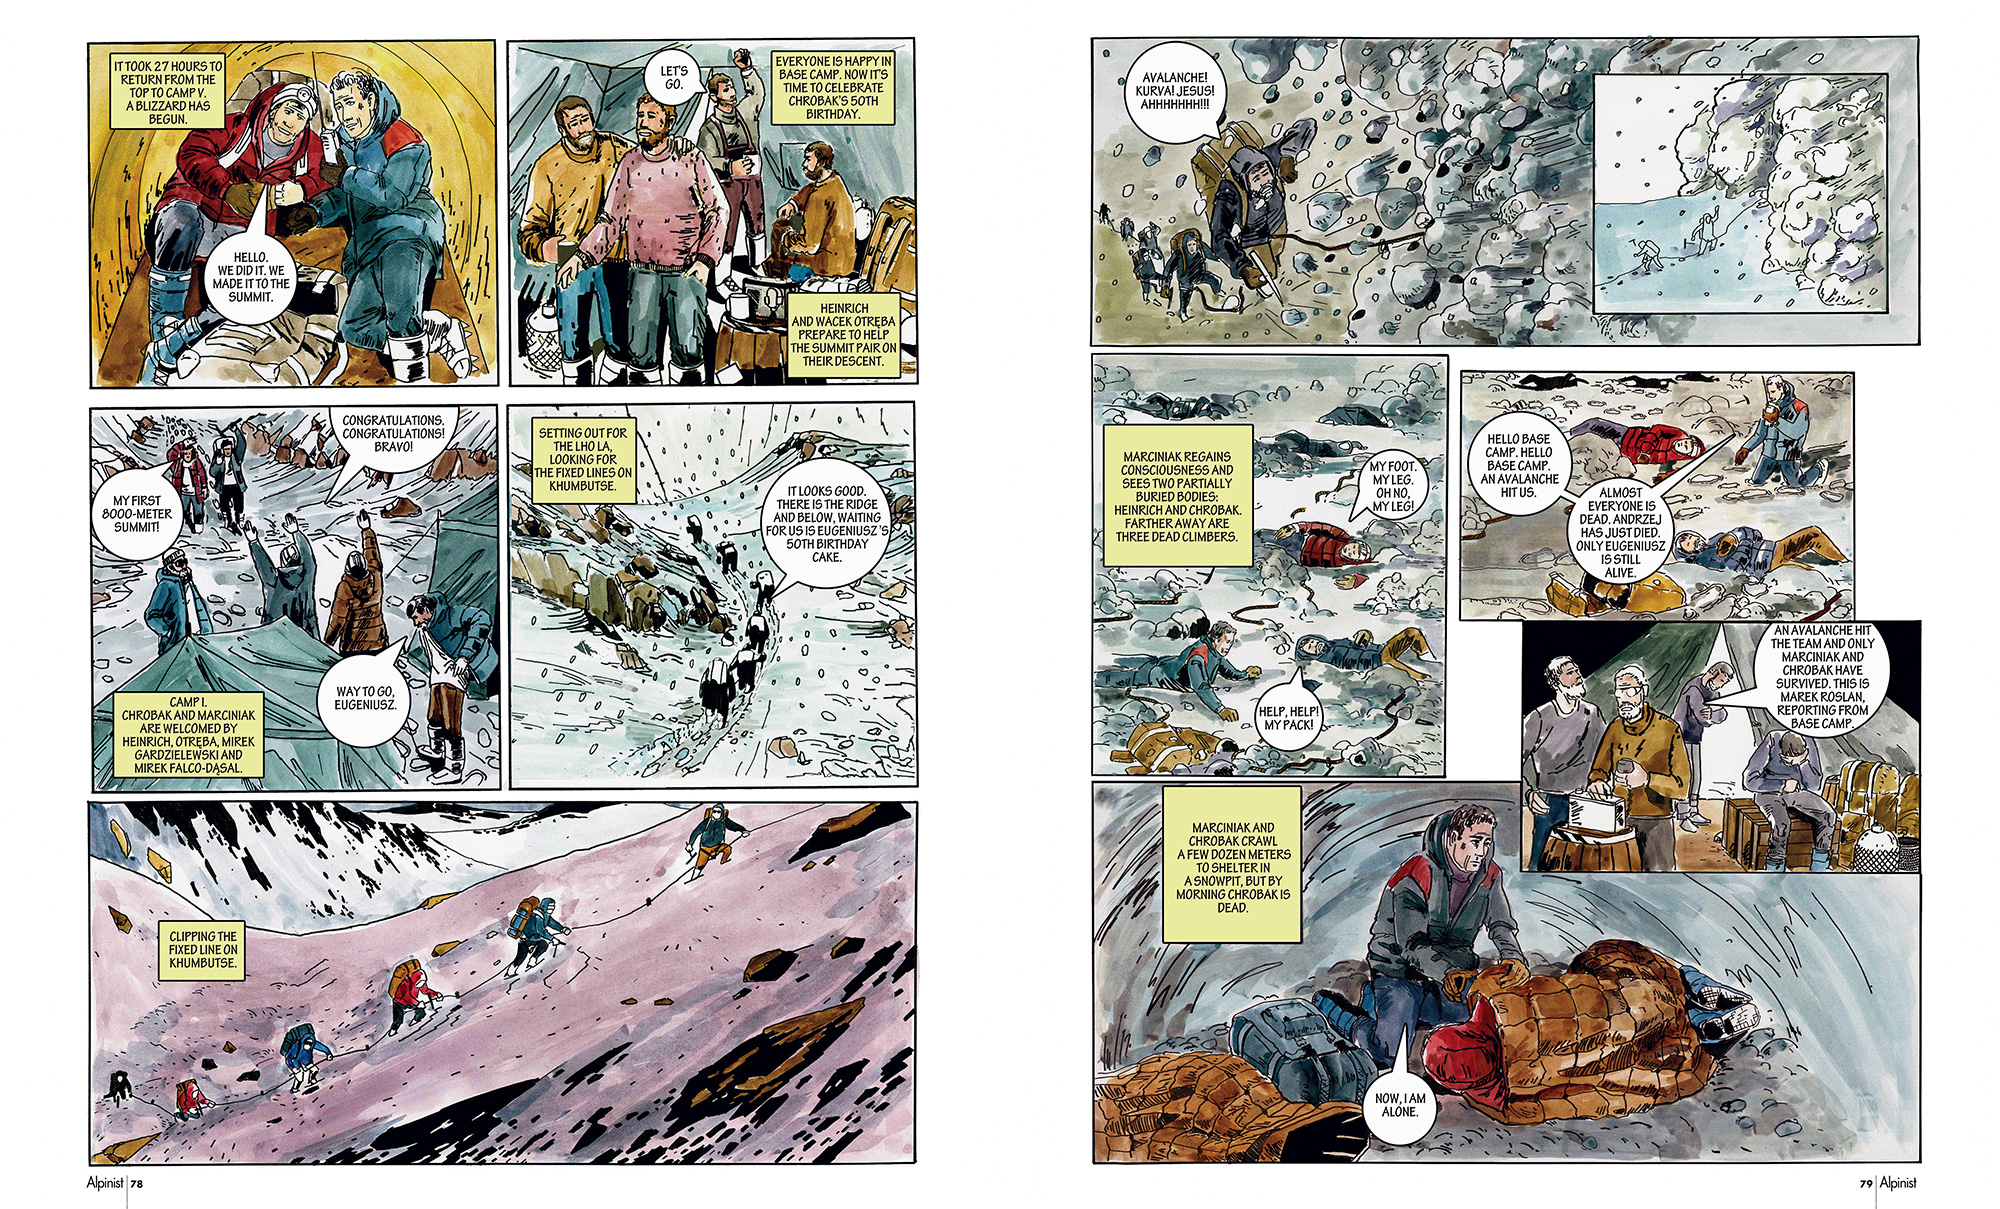 Трагедия на Эвересте 1989 года с польскими альпинистами и спасоперация под руководством Артура Хайзера в комиксе на страницах журнала Alpinist 